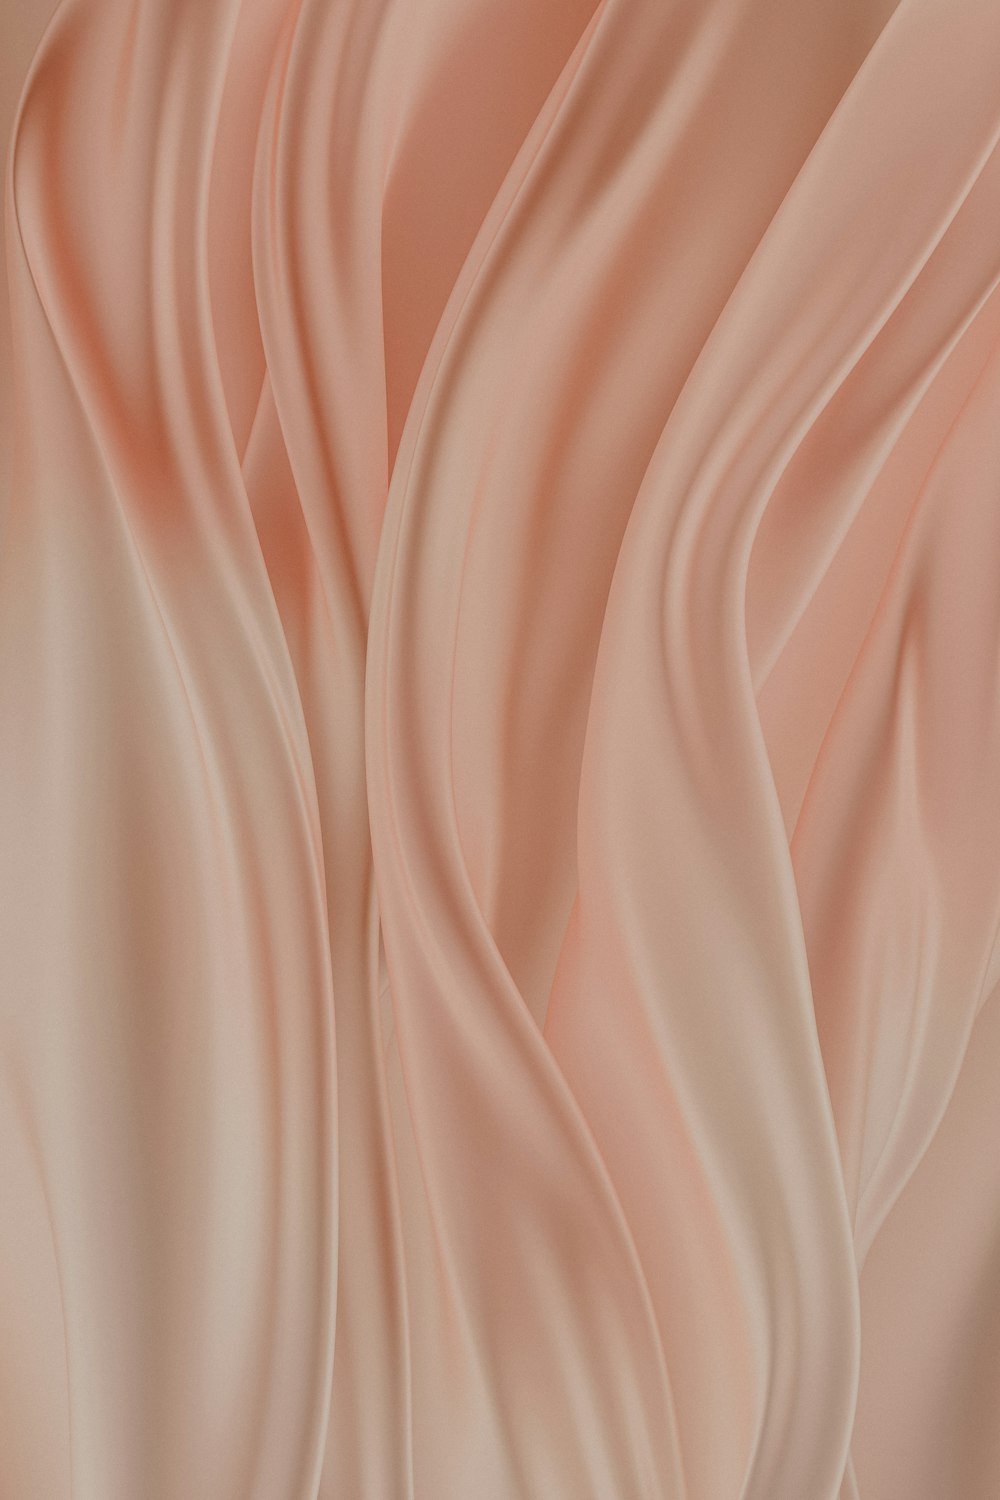 uno sfondo rosa tenue con pieghe ondulate